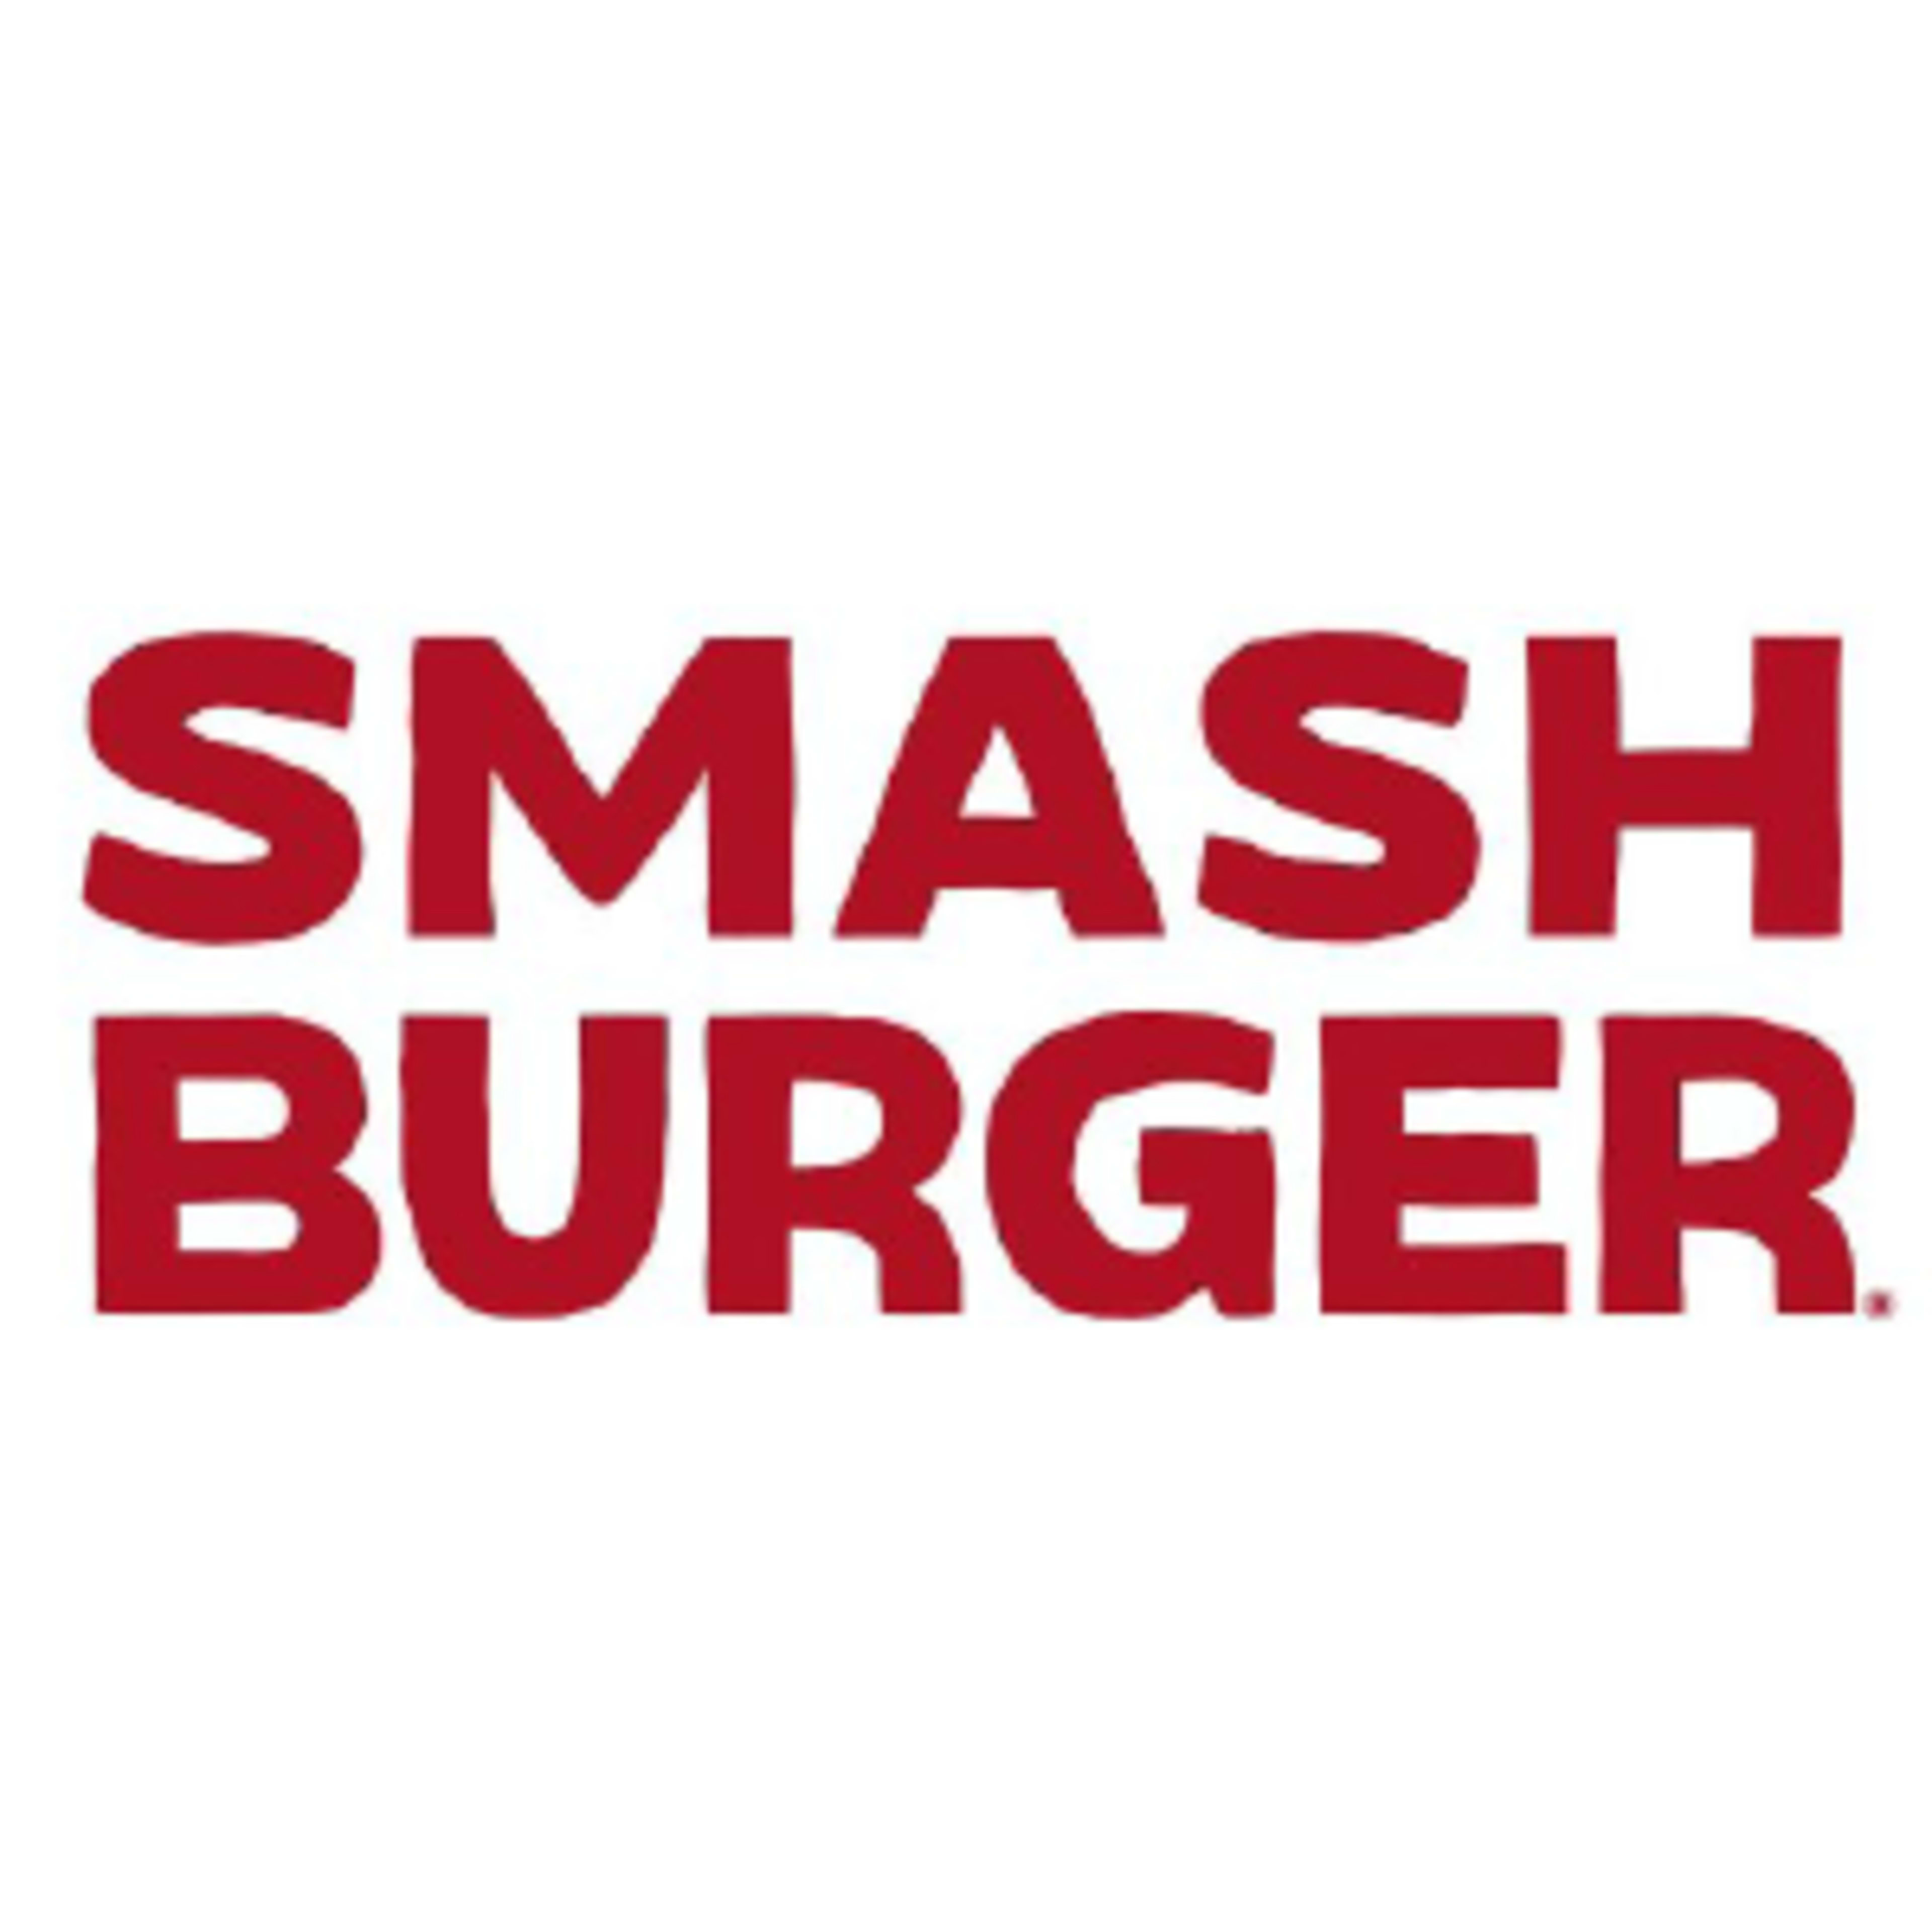 SmashburgerCode